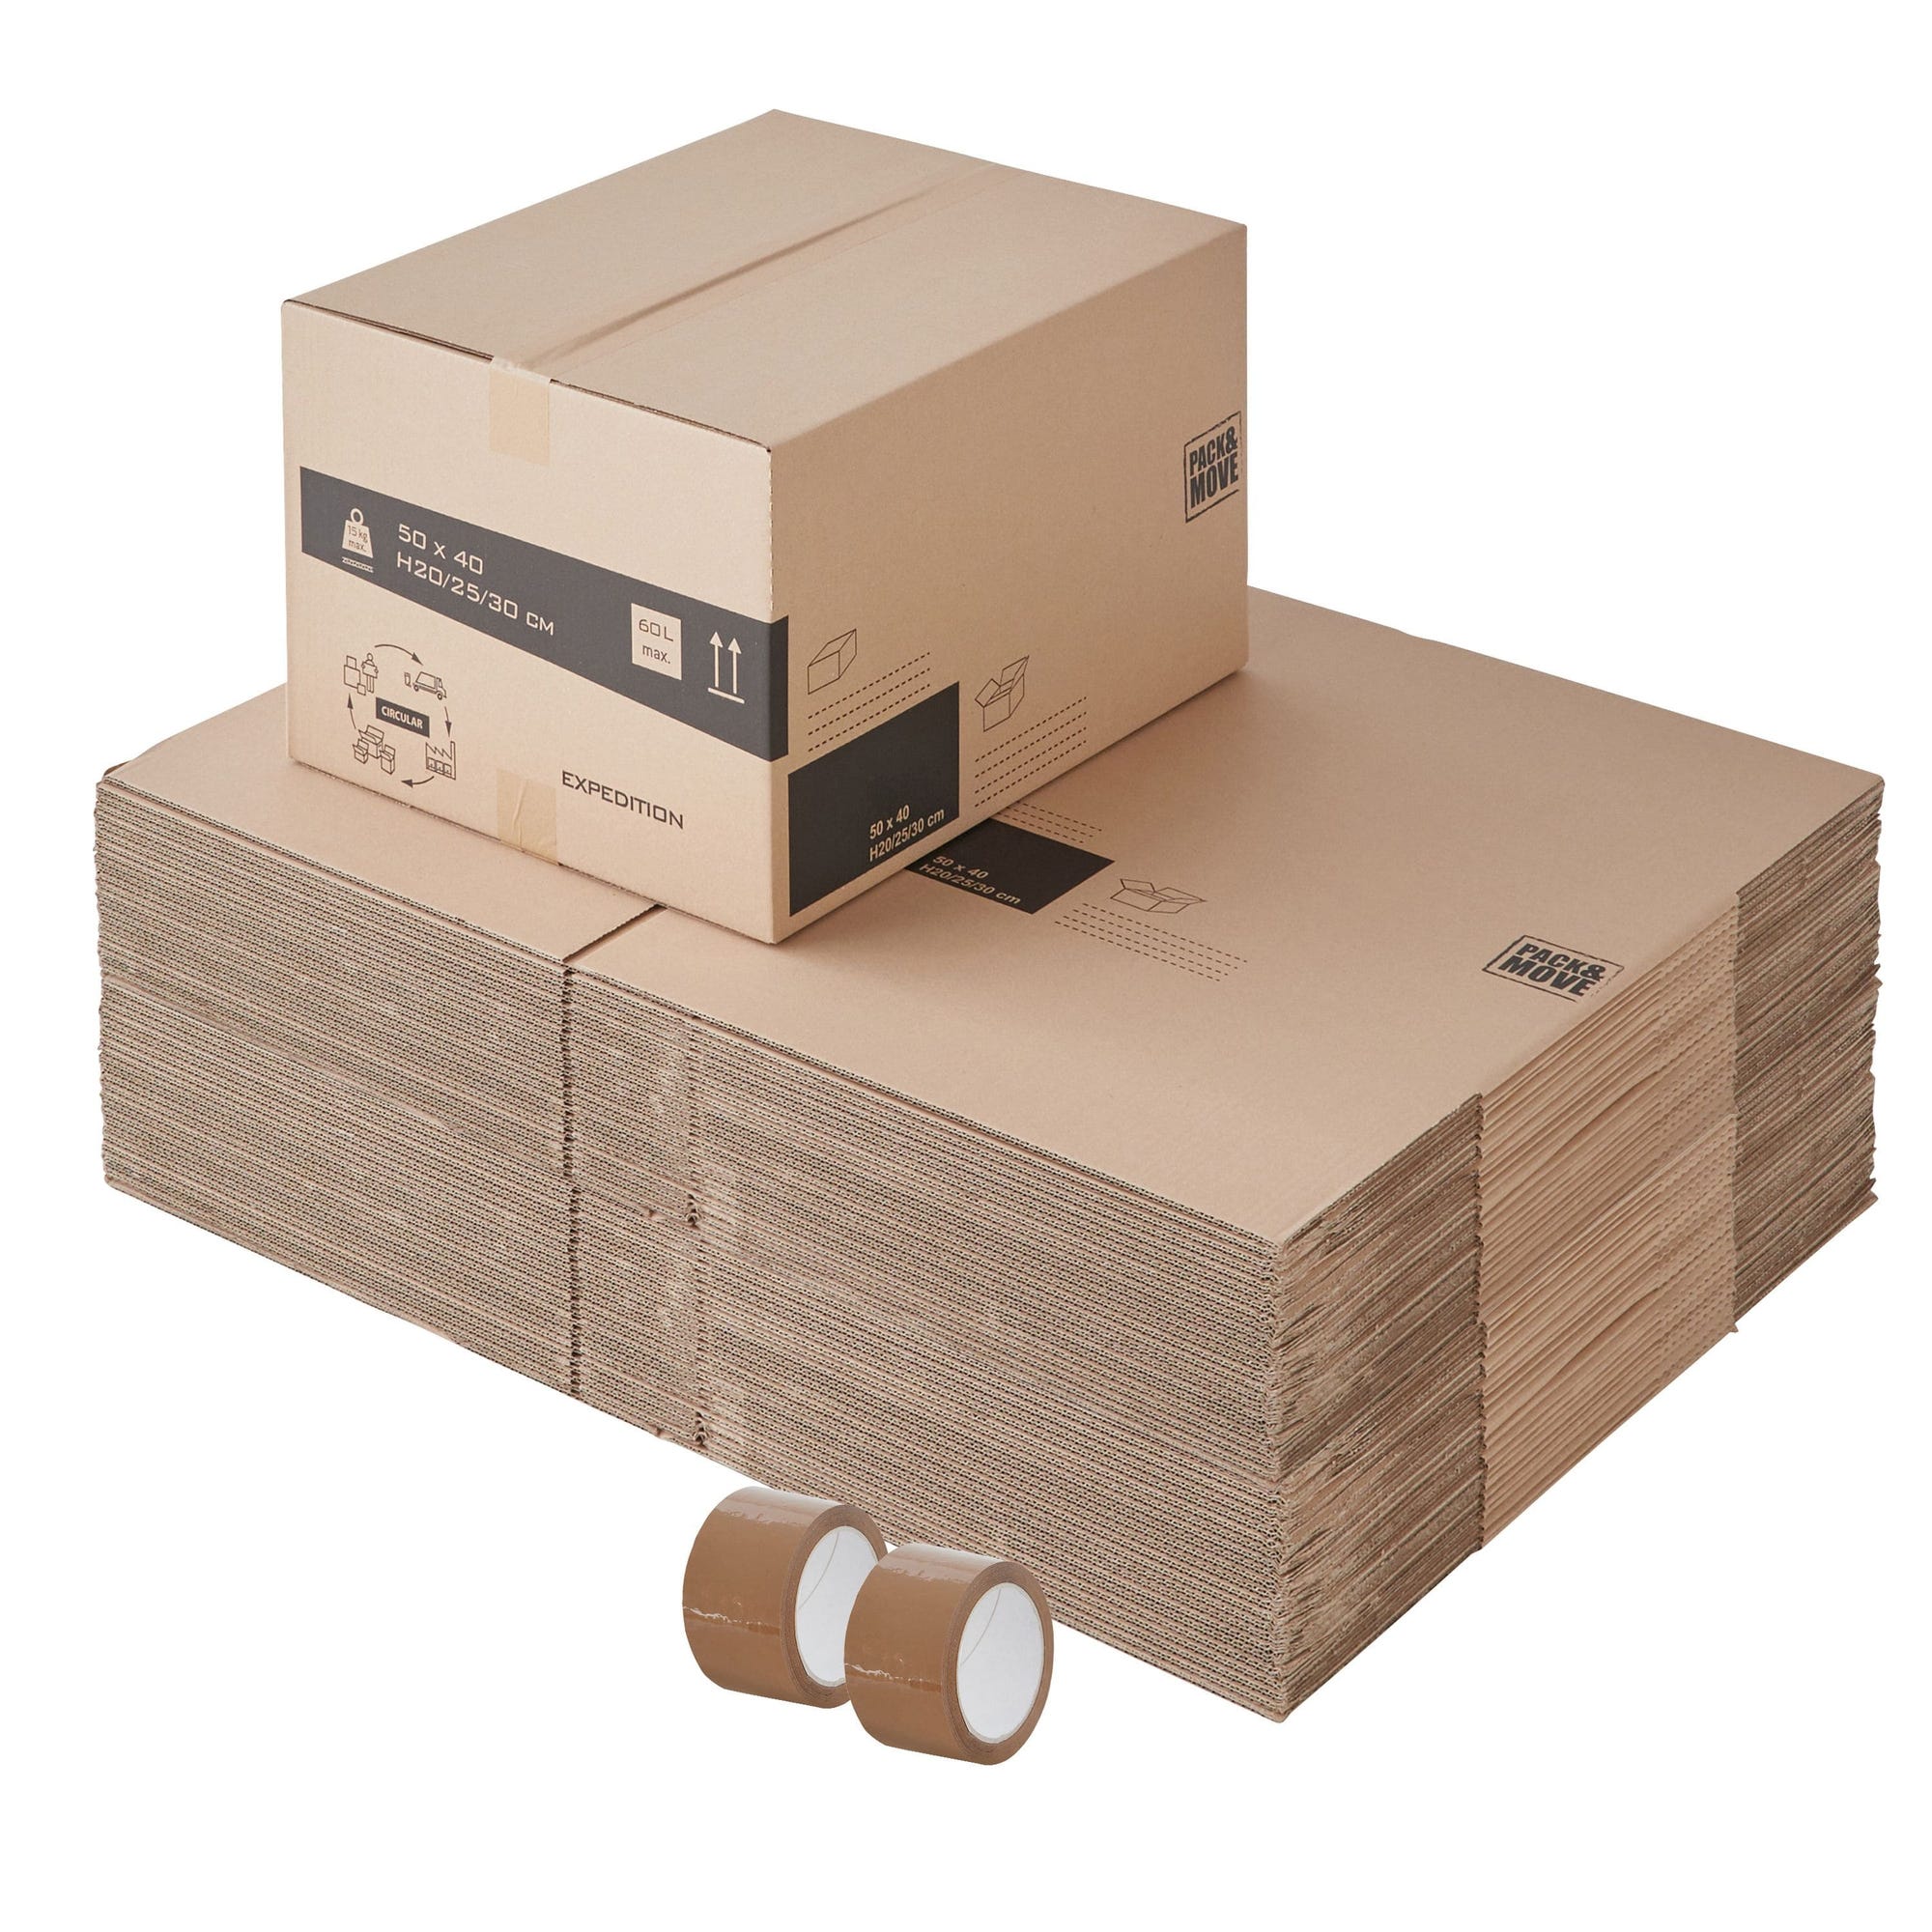 Lot de 50 boites cartons à hauteur variable - 60L, charge max 15kg - Déménagement ou expédition - made in France + 2 adhésifs offerts 0